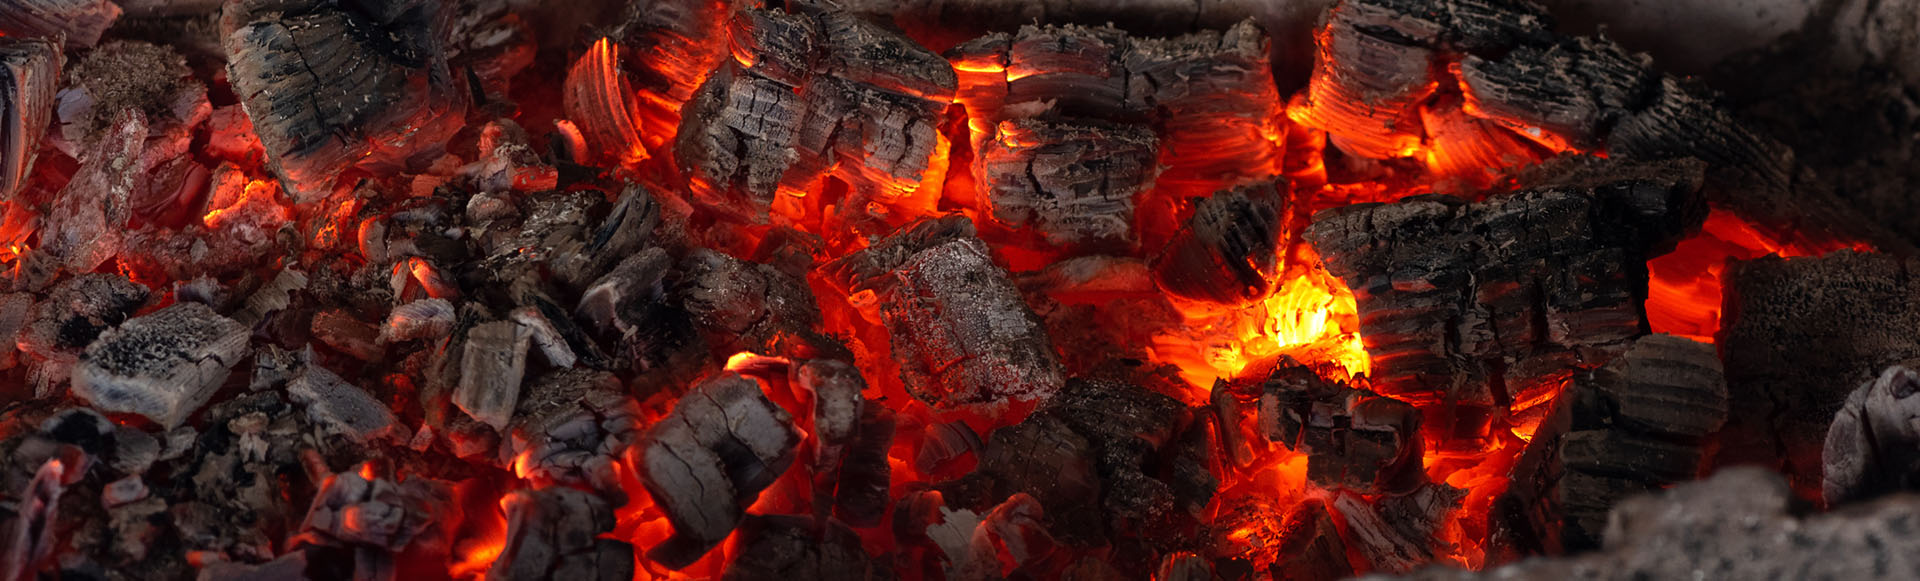 closeup of hot bbq coals